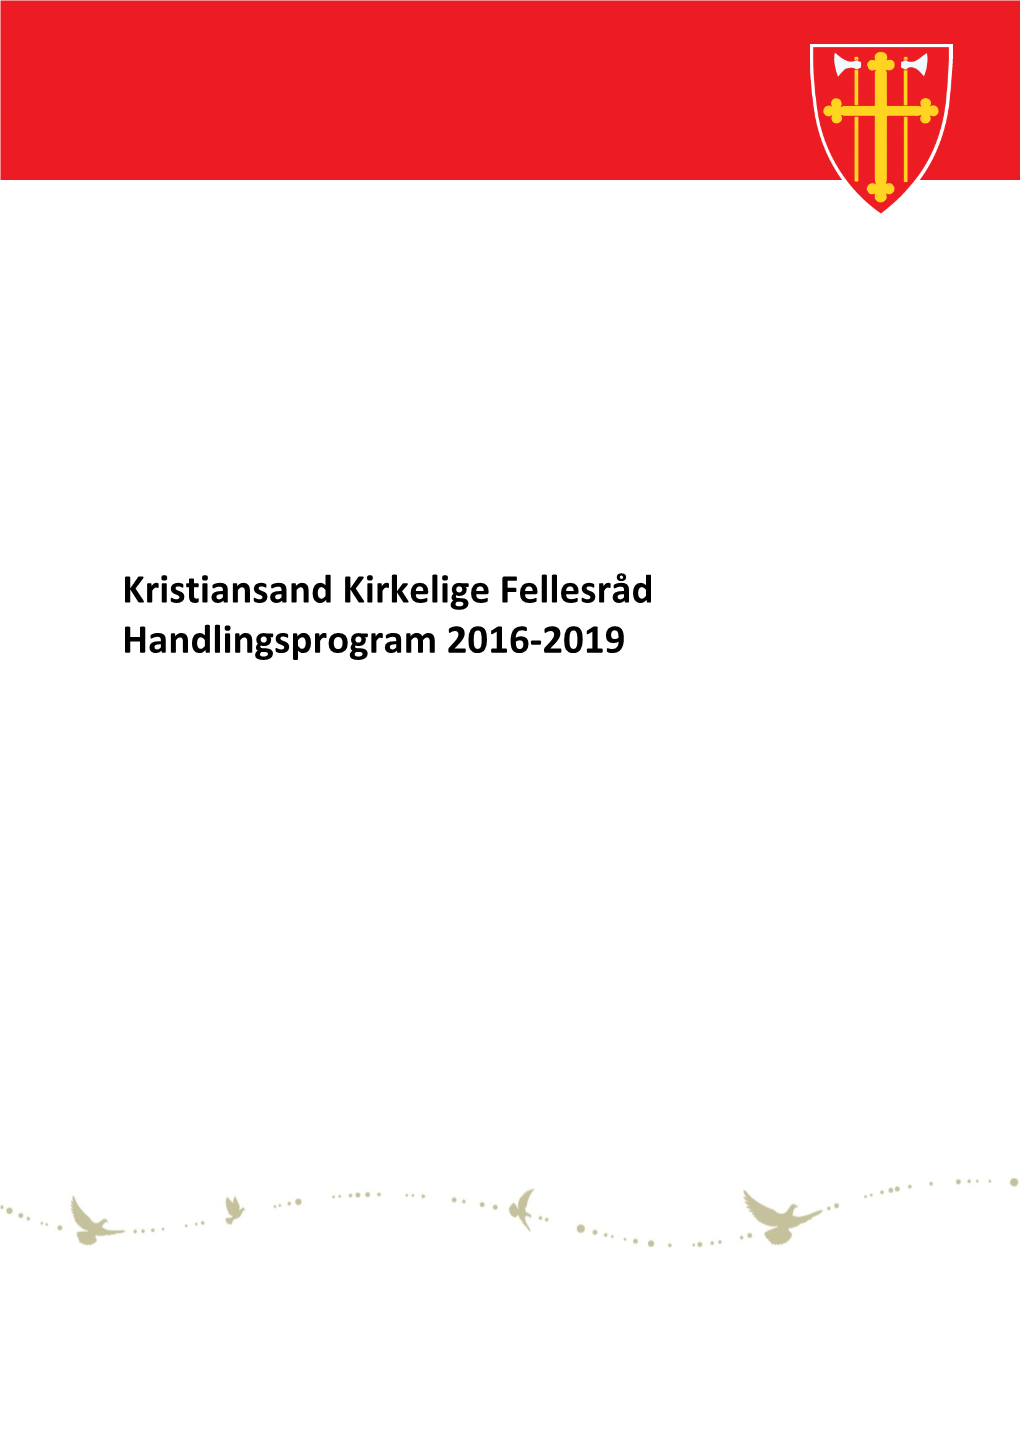 Kristiansand Kirkelige Fellesråd Handlingsprogram 2016-2019